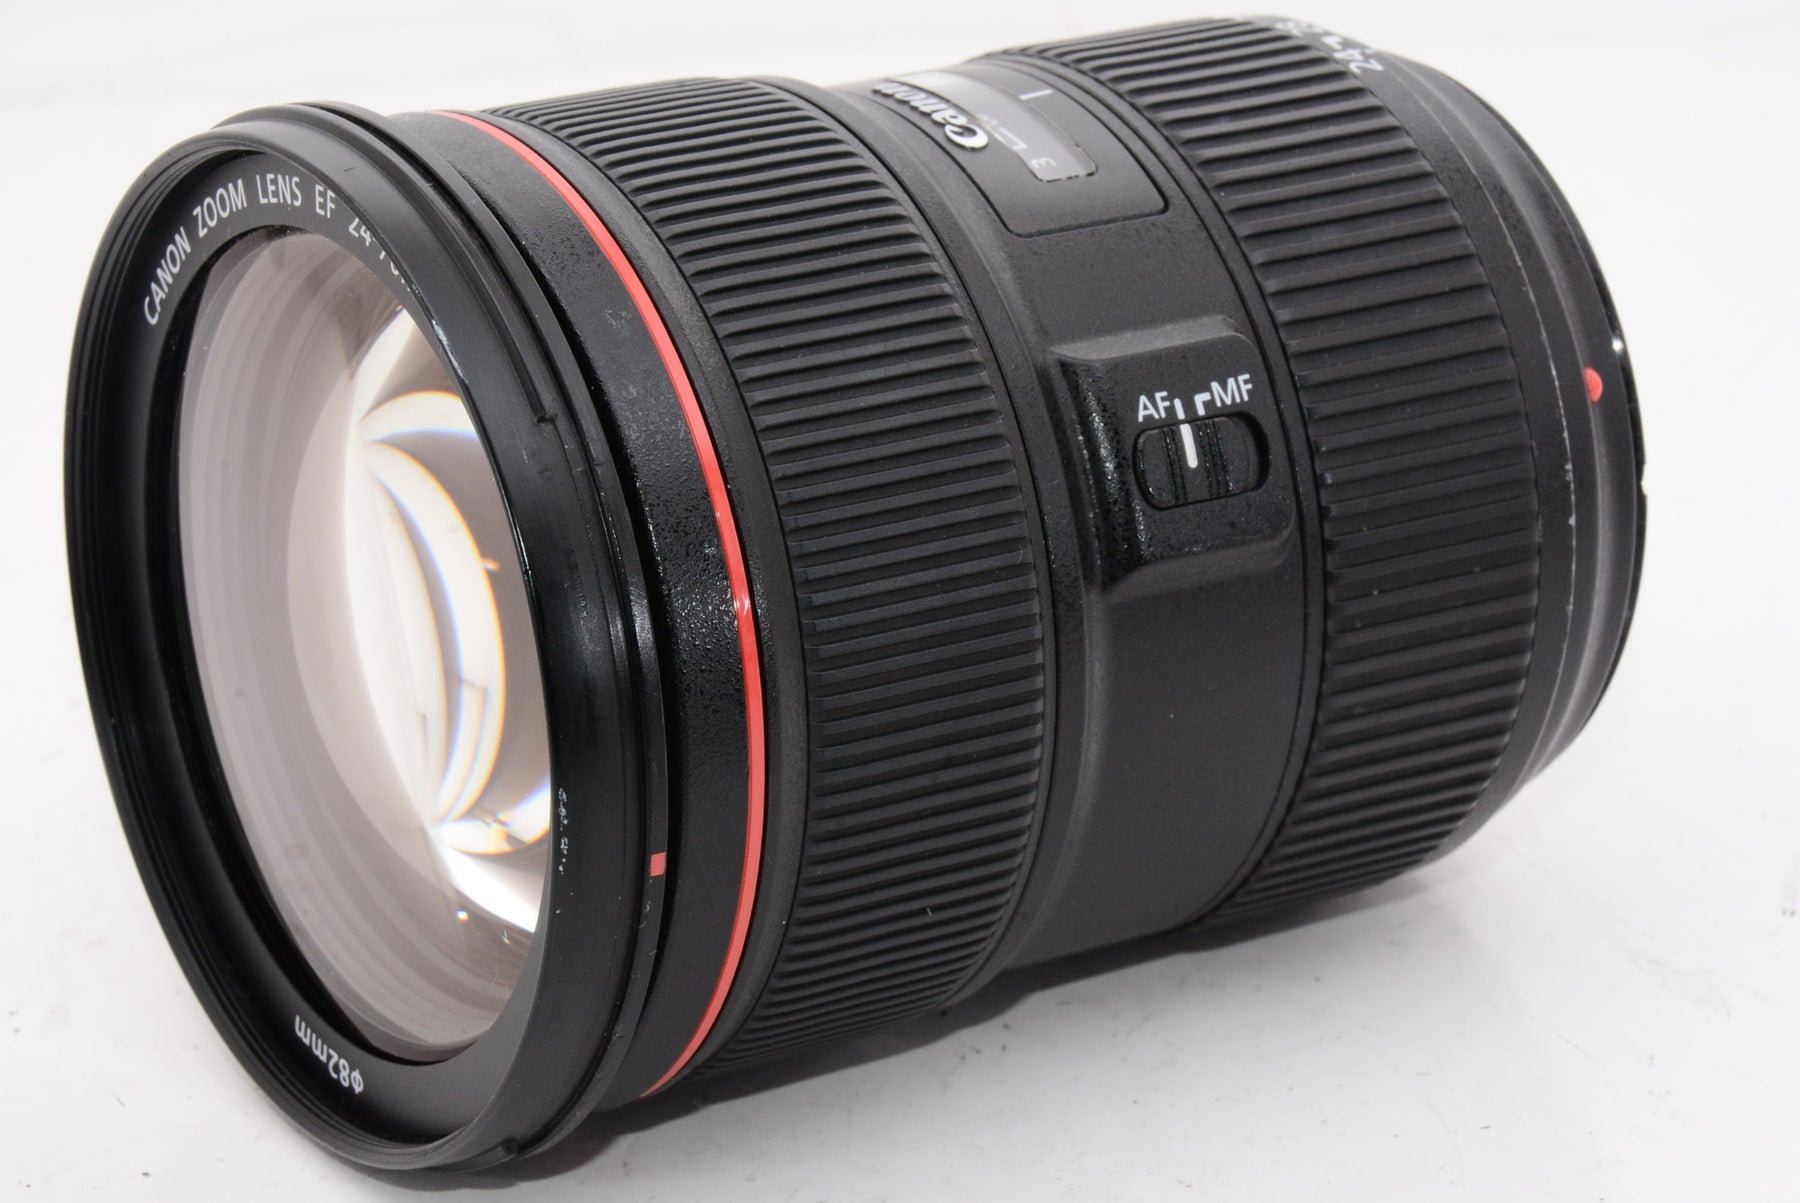 【オススメ】Canon 標準ズームレンズ EF24-70mm F2.8L II USM フルサイズ対応